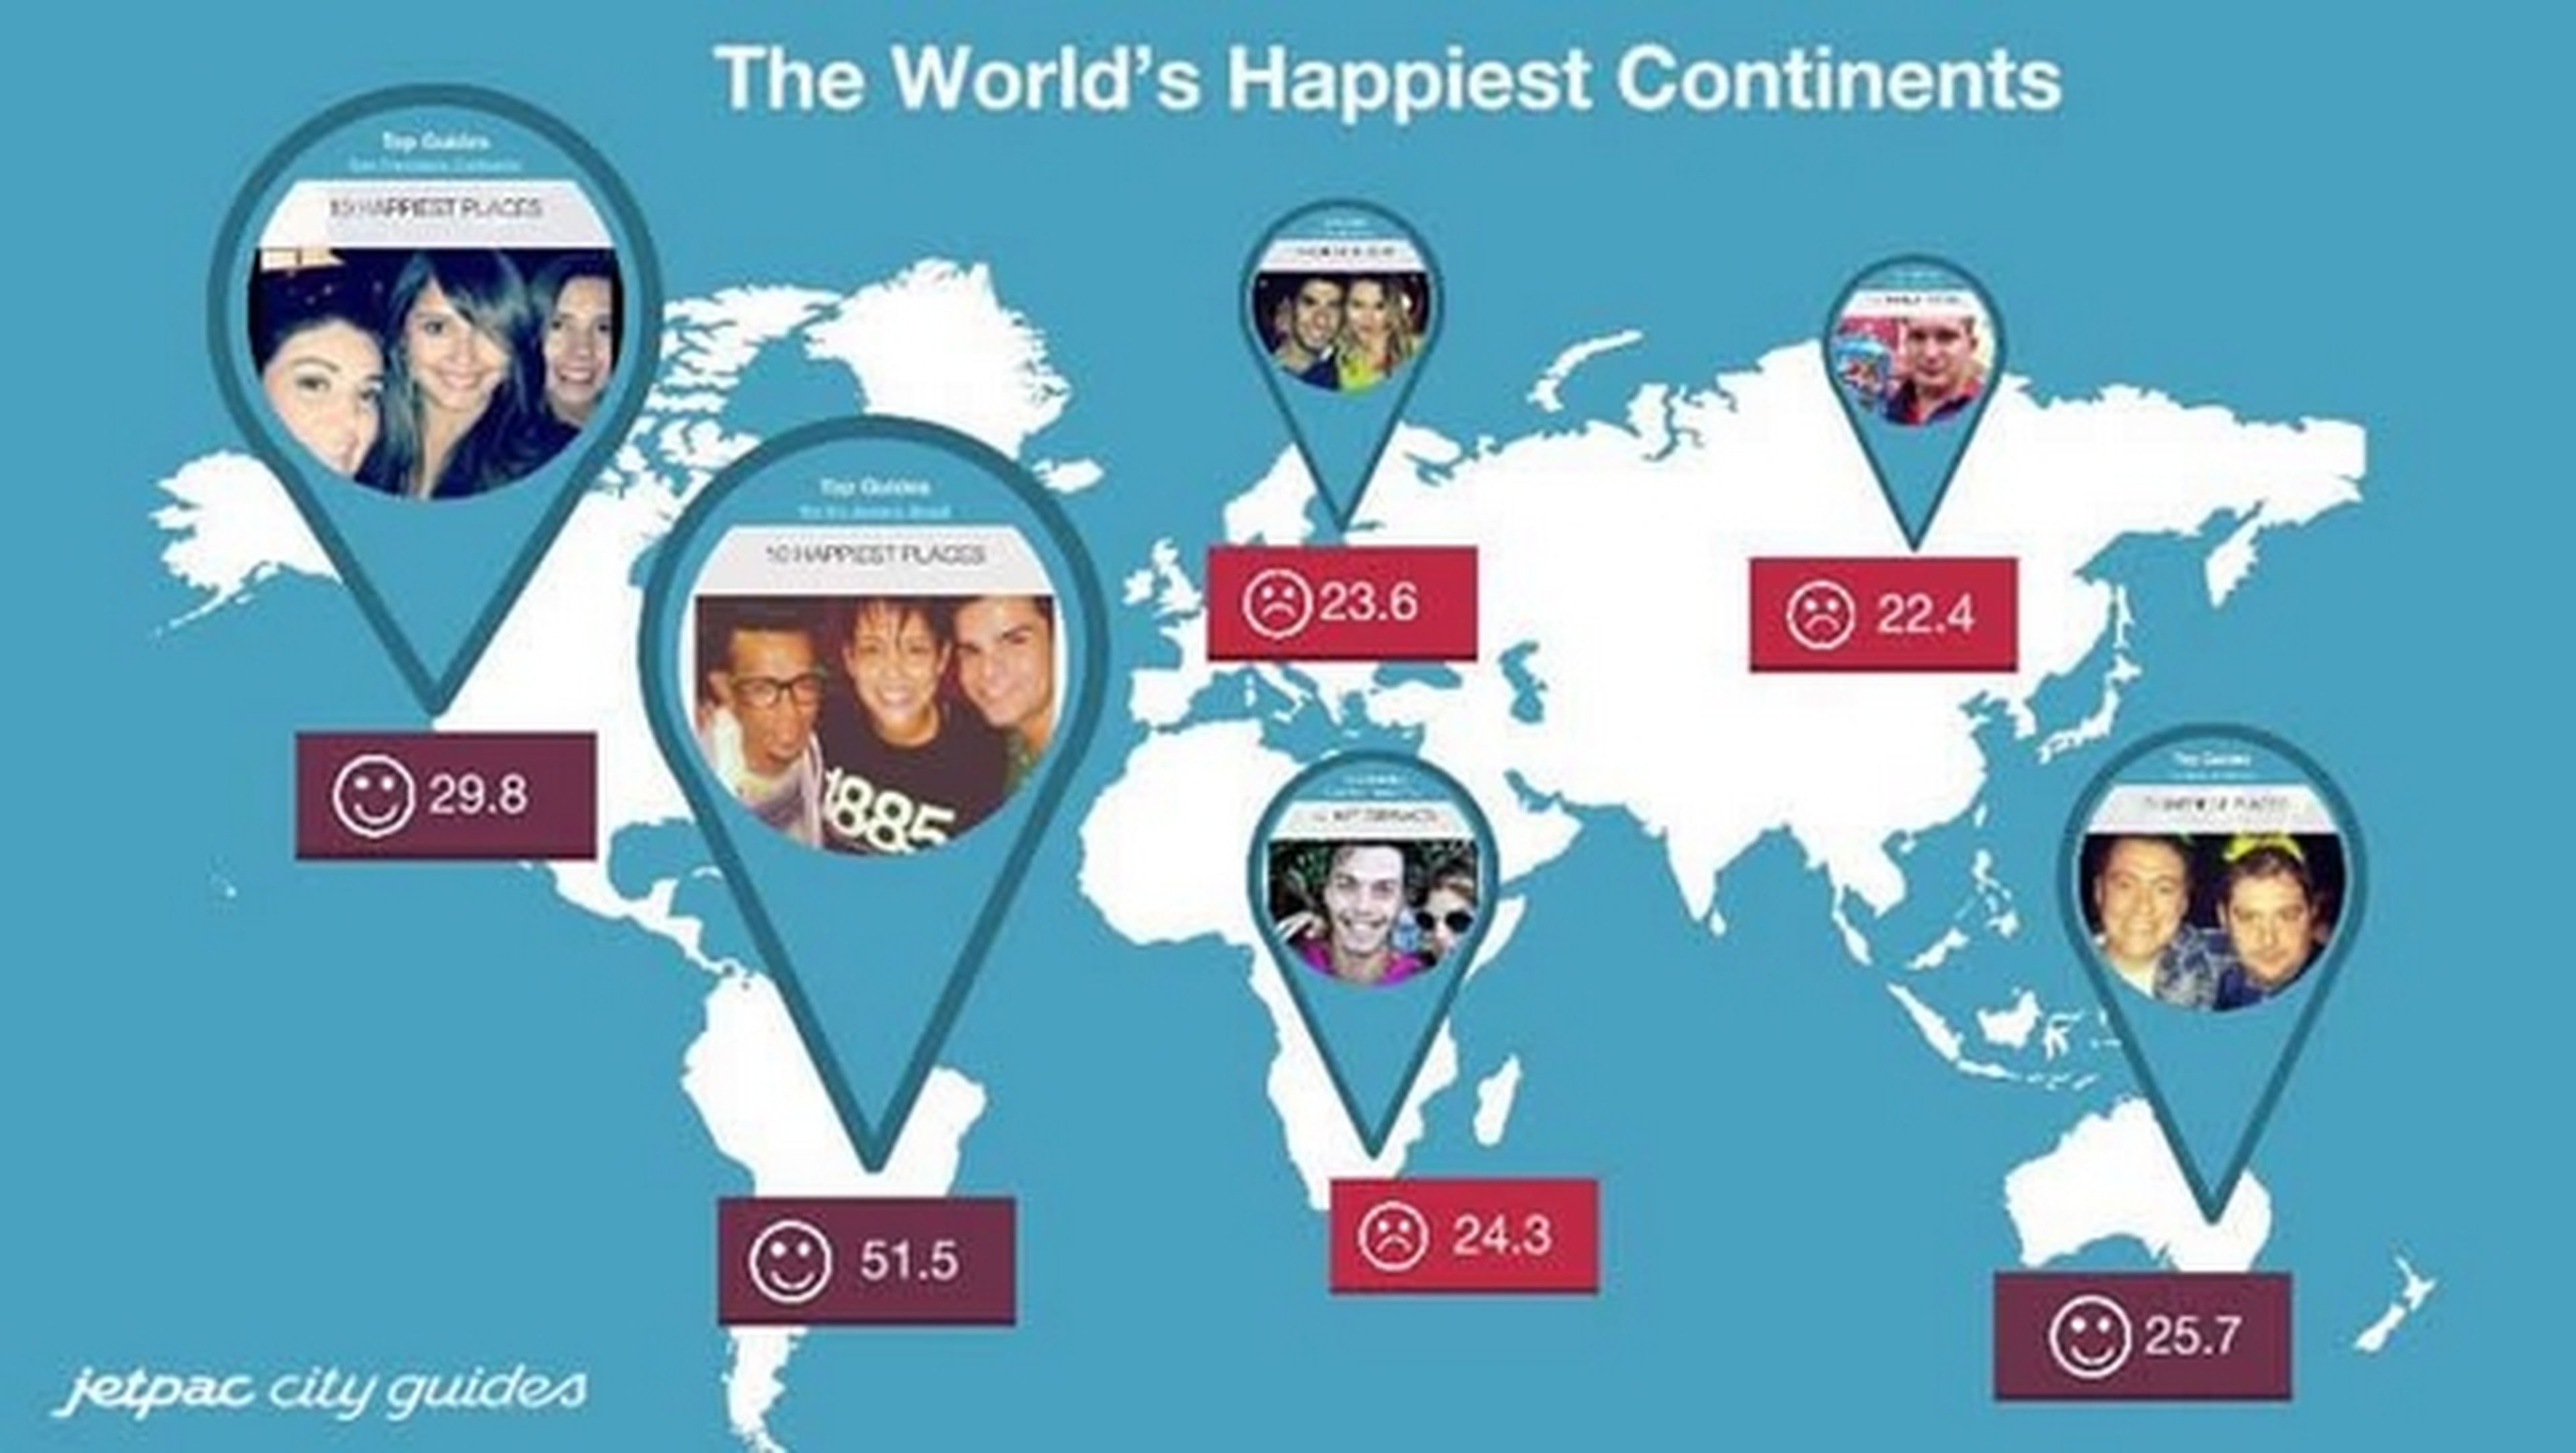 Los países más felices y más tristes del mundo según Instagram